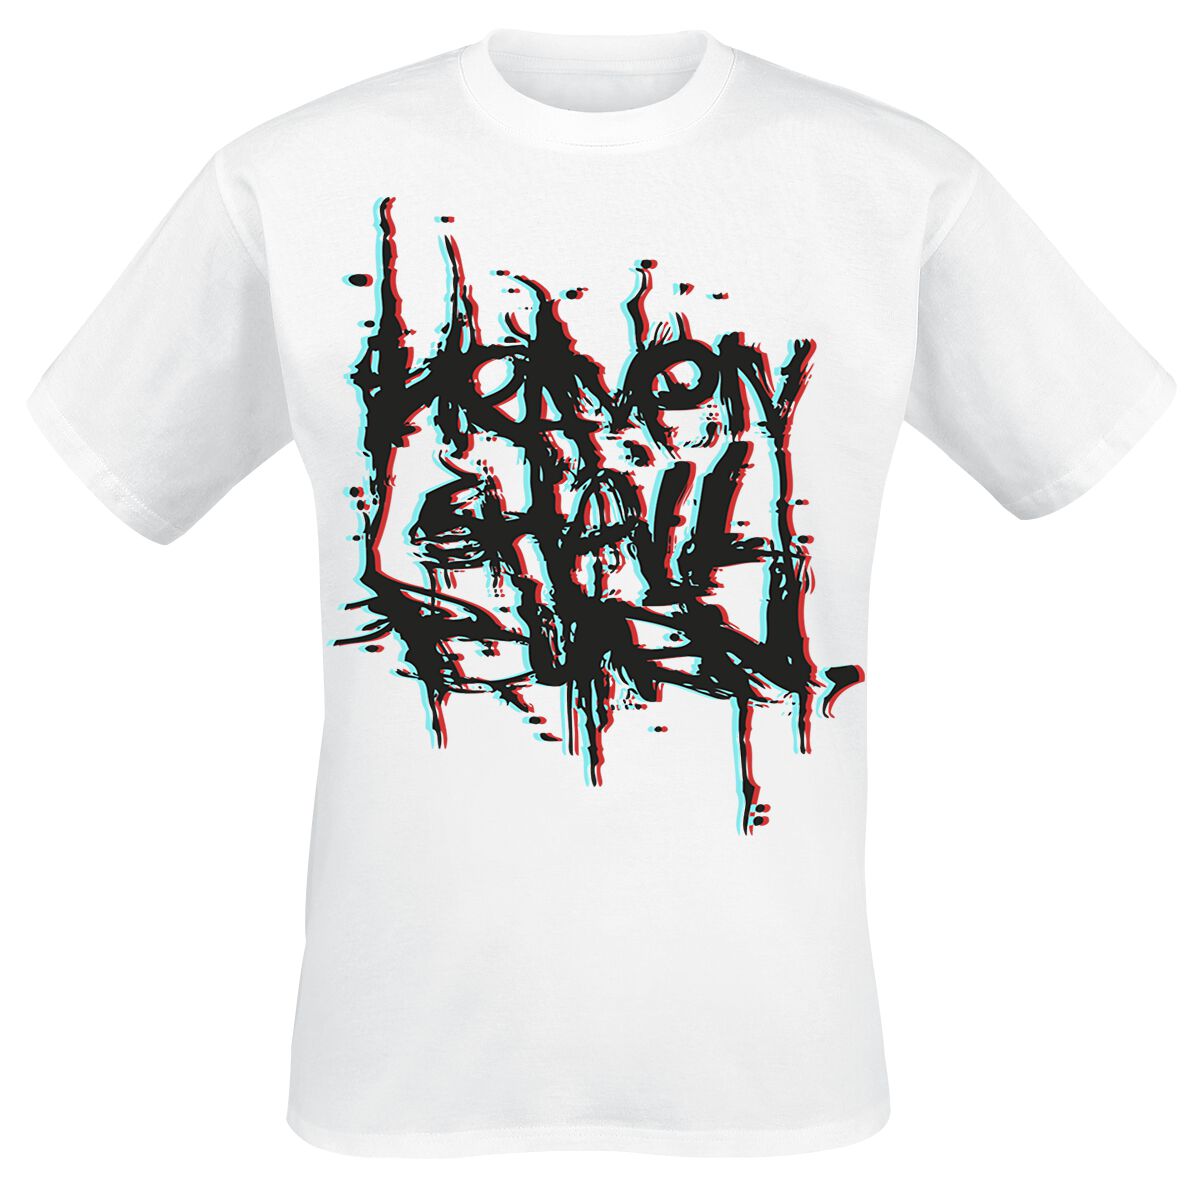 Heaven Shall Burn T-Shirt - 3D Logo - S bis XXL - für Männer - Größe M - weiß  - Lizenziertes Merchandise!